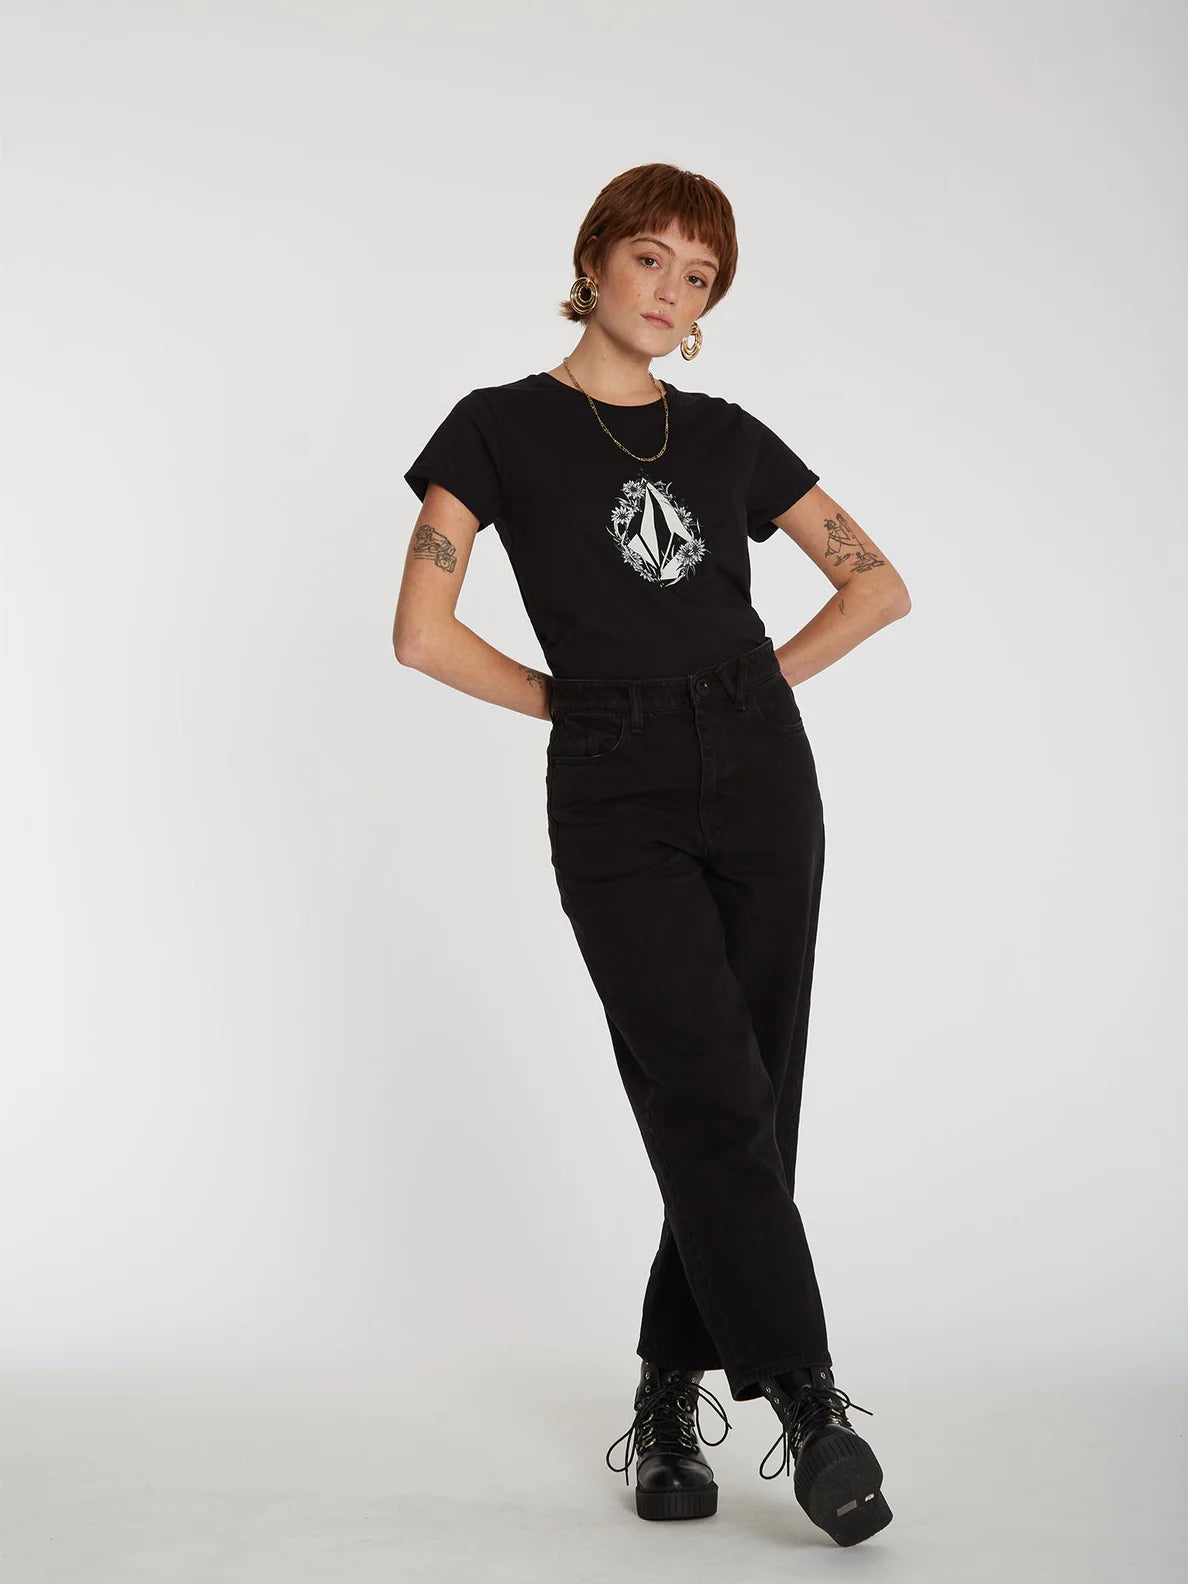 Camiseta Chica Volcom Radical Daze Tee Black | Camisetas manga corta de mujer | Volcom Shop | surfdevils.com